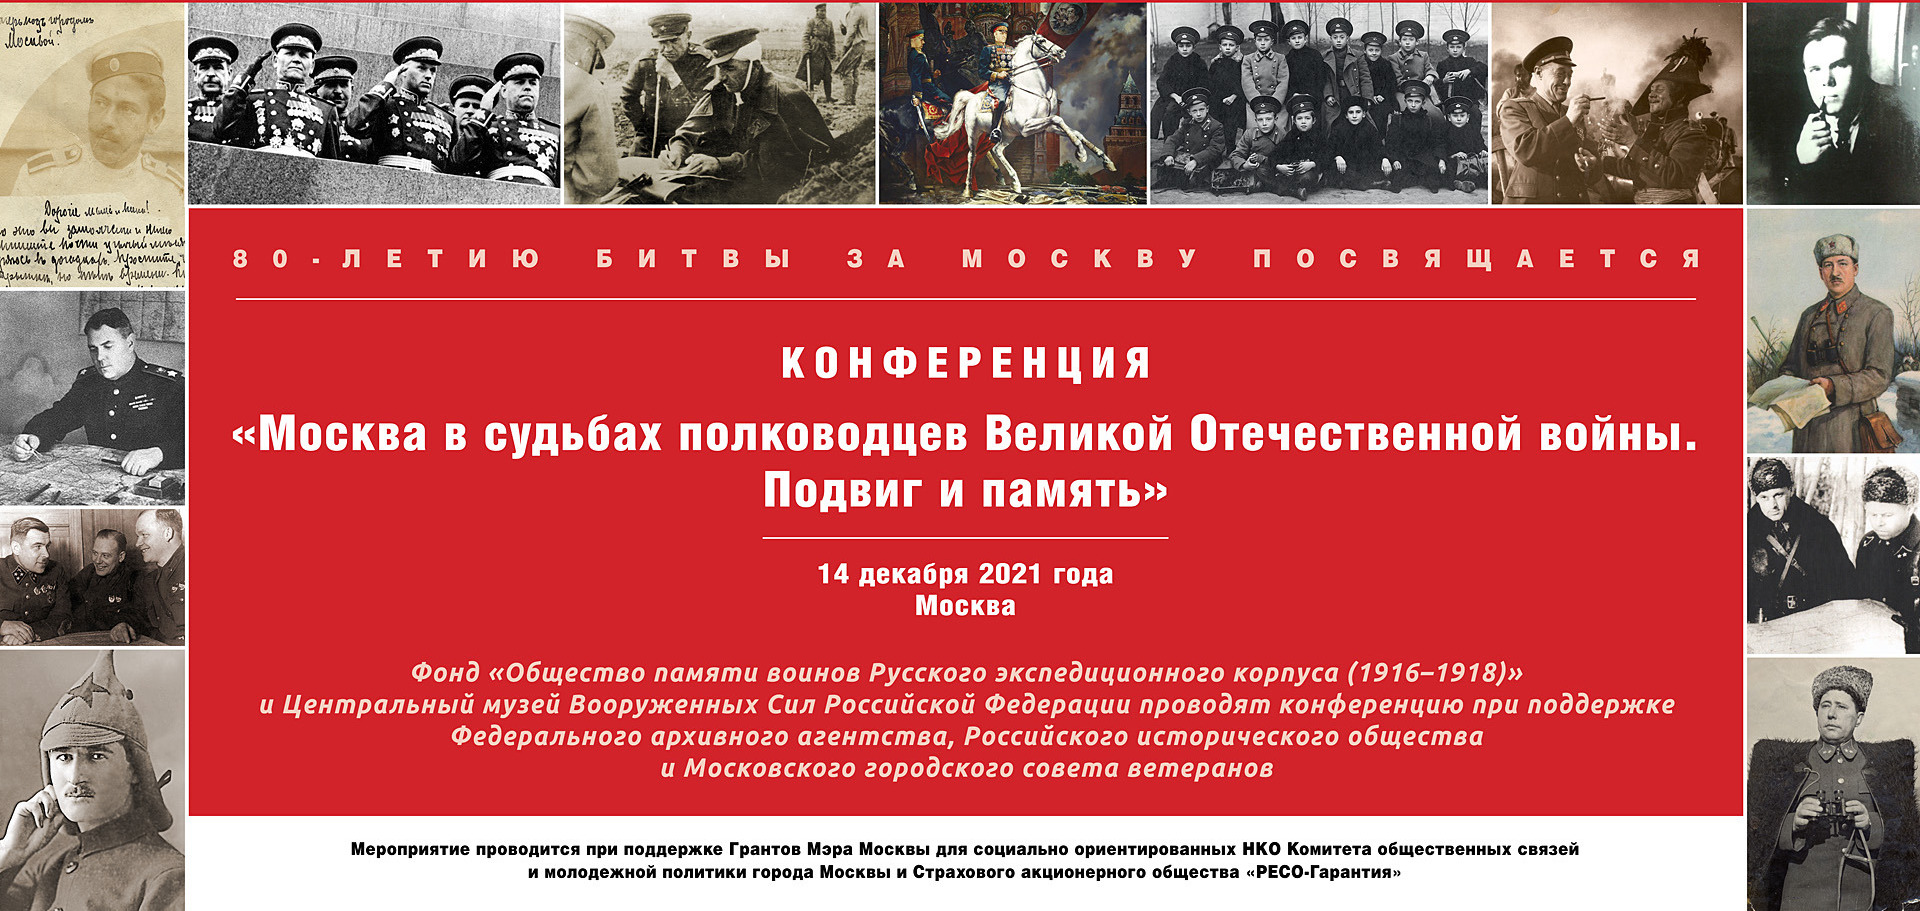 Конференция «Москва в судьбах полководцев Великой Отечественной войны 1941-1945 гг. Подвиг и память»